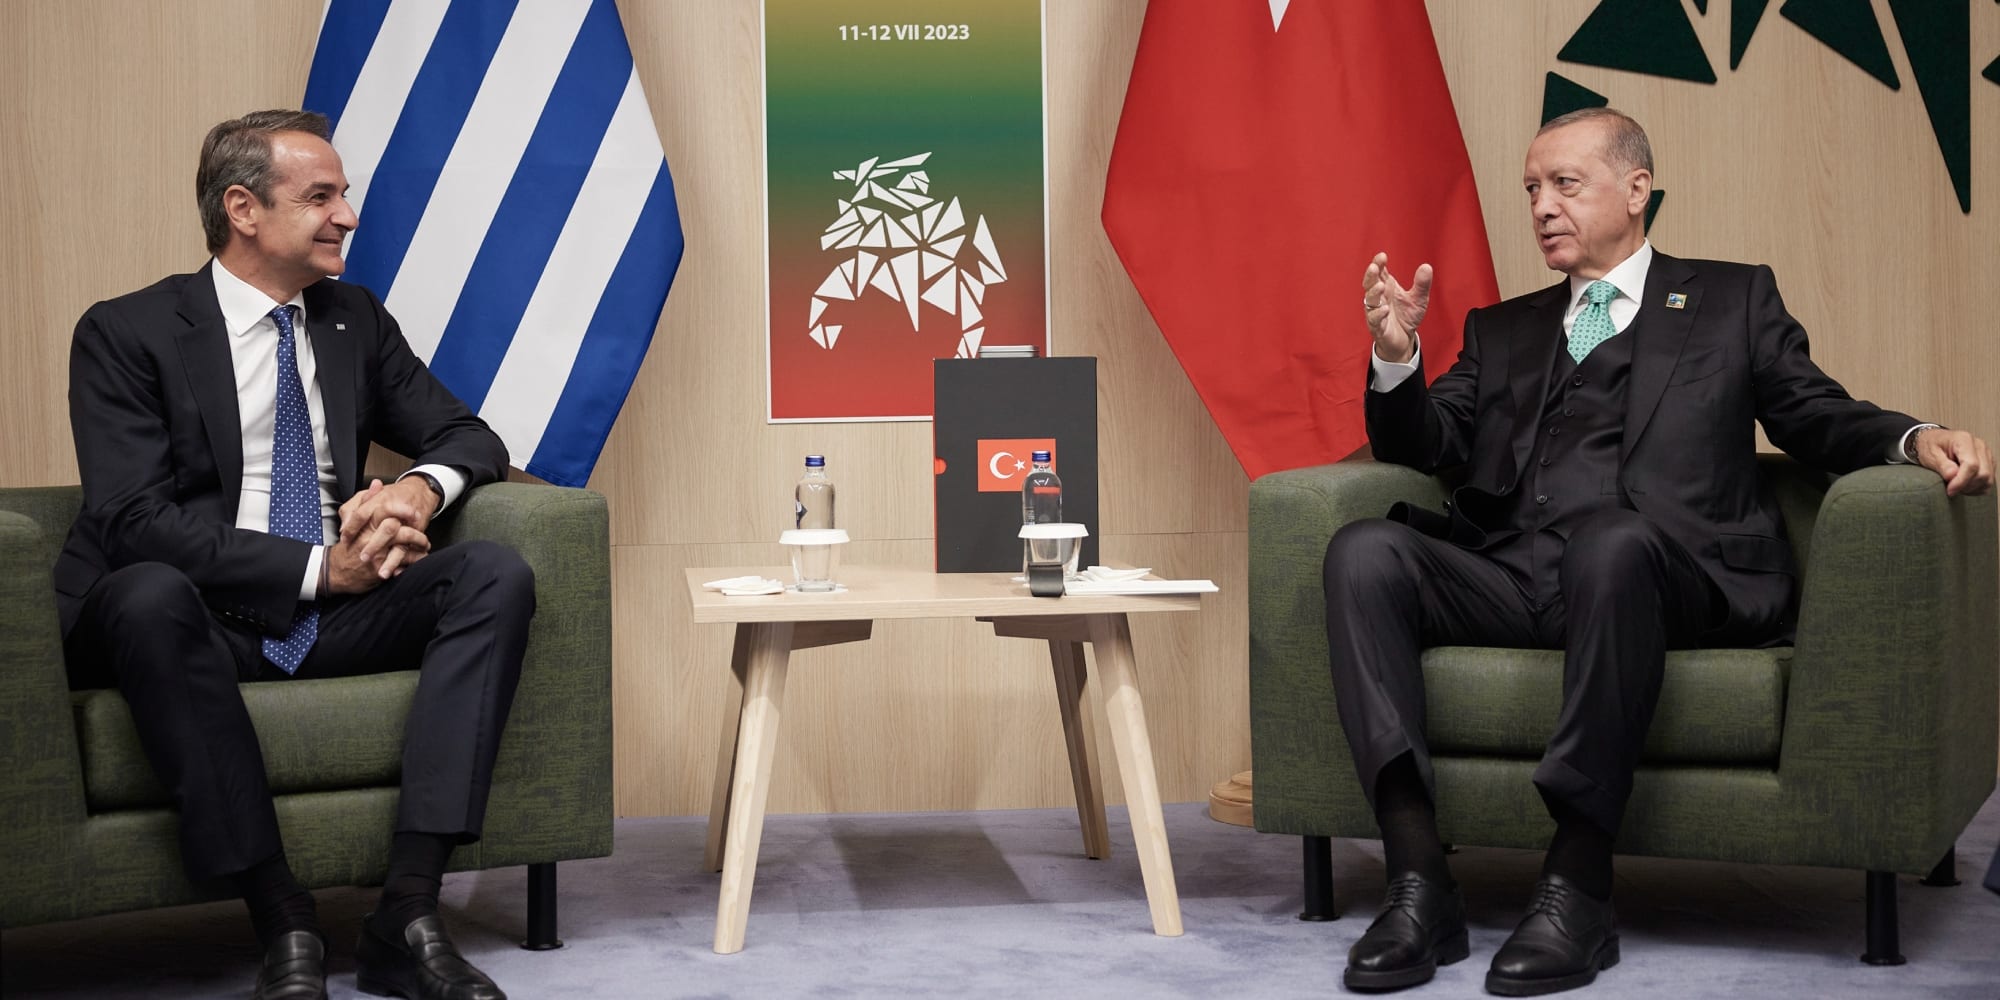 Κυβερνητικές πηγές: Στη συνάντηση του Κυριάκου Μητσοτάκη με τον Ρετζέπ Ταγίπ Ερντογάν έγινε μια ειλικρινής συζήτηση σε θετικό κλίμα